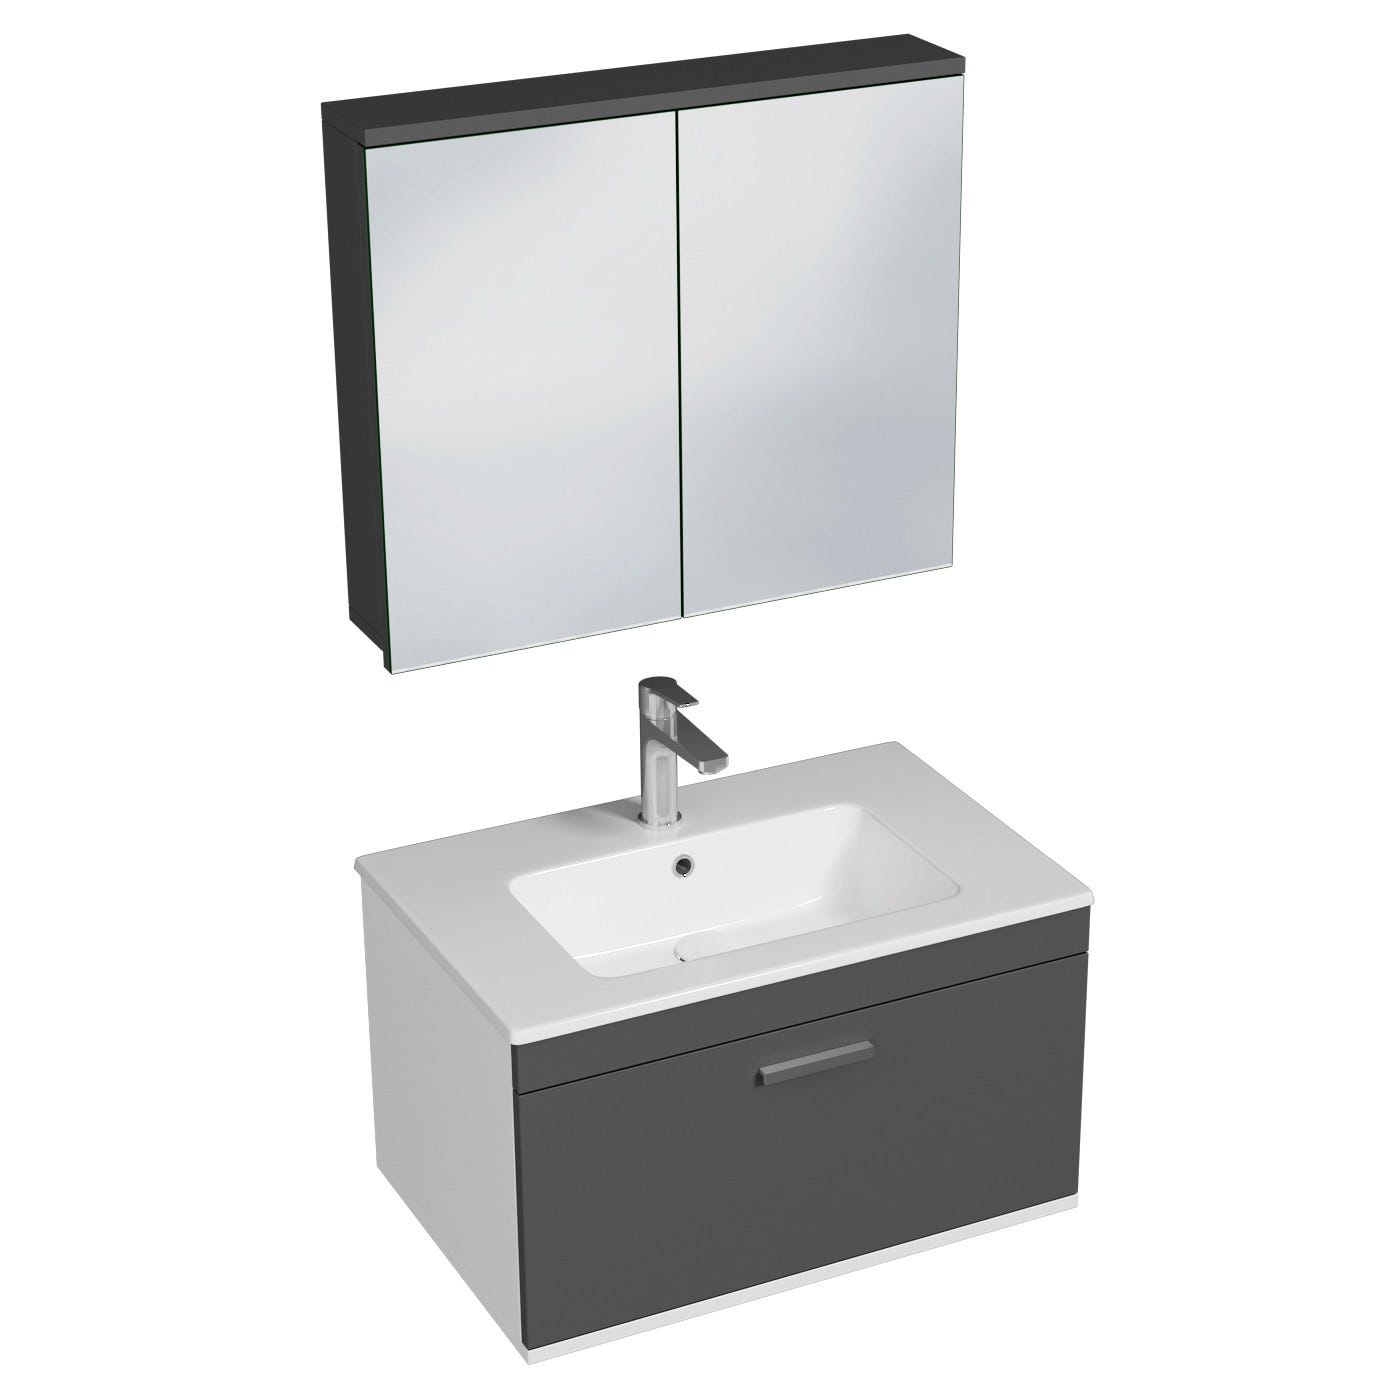 RUBITE Meuble salle de bain simple vasque 1 tiroir gris anthracite largeur 70 cm + miroir armoire 0